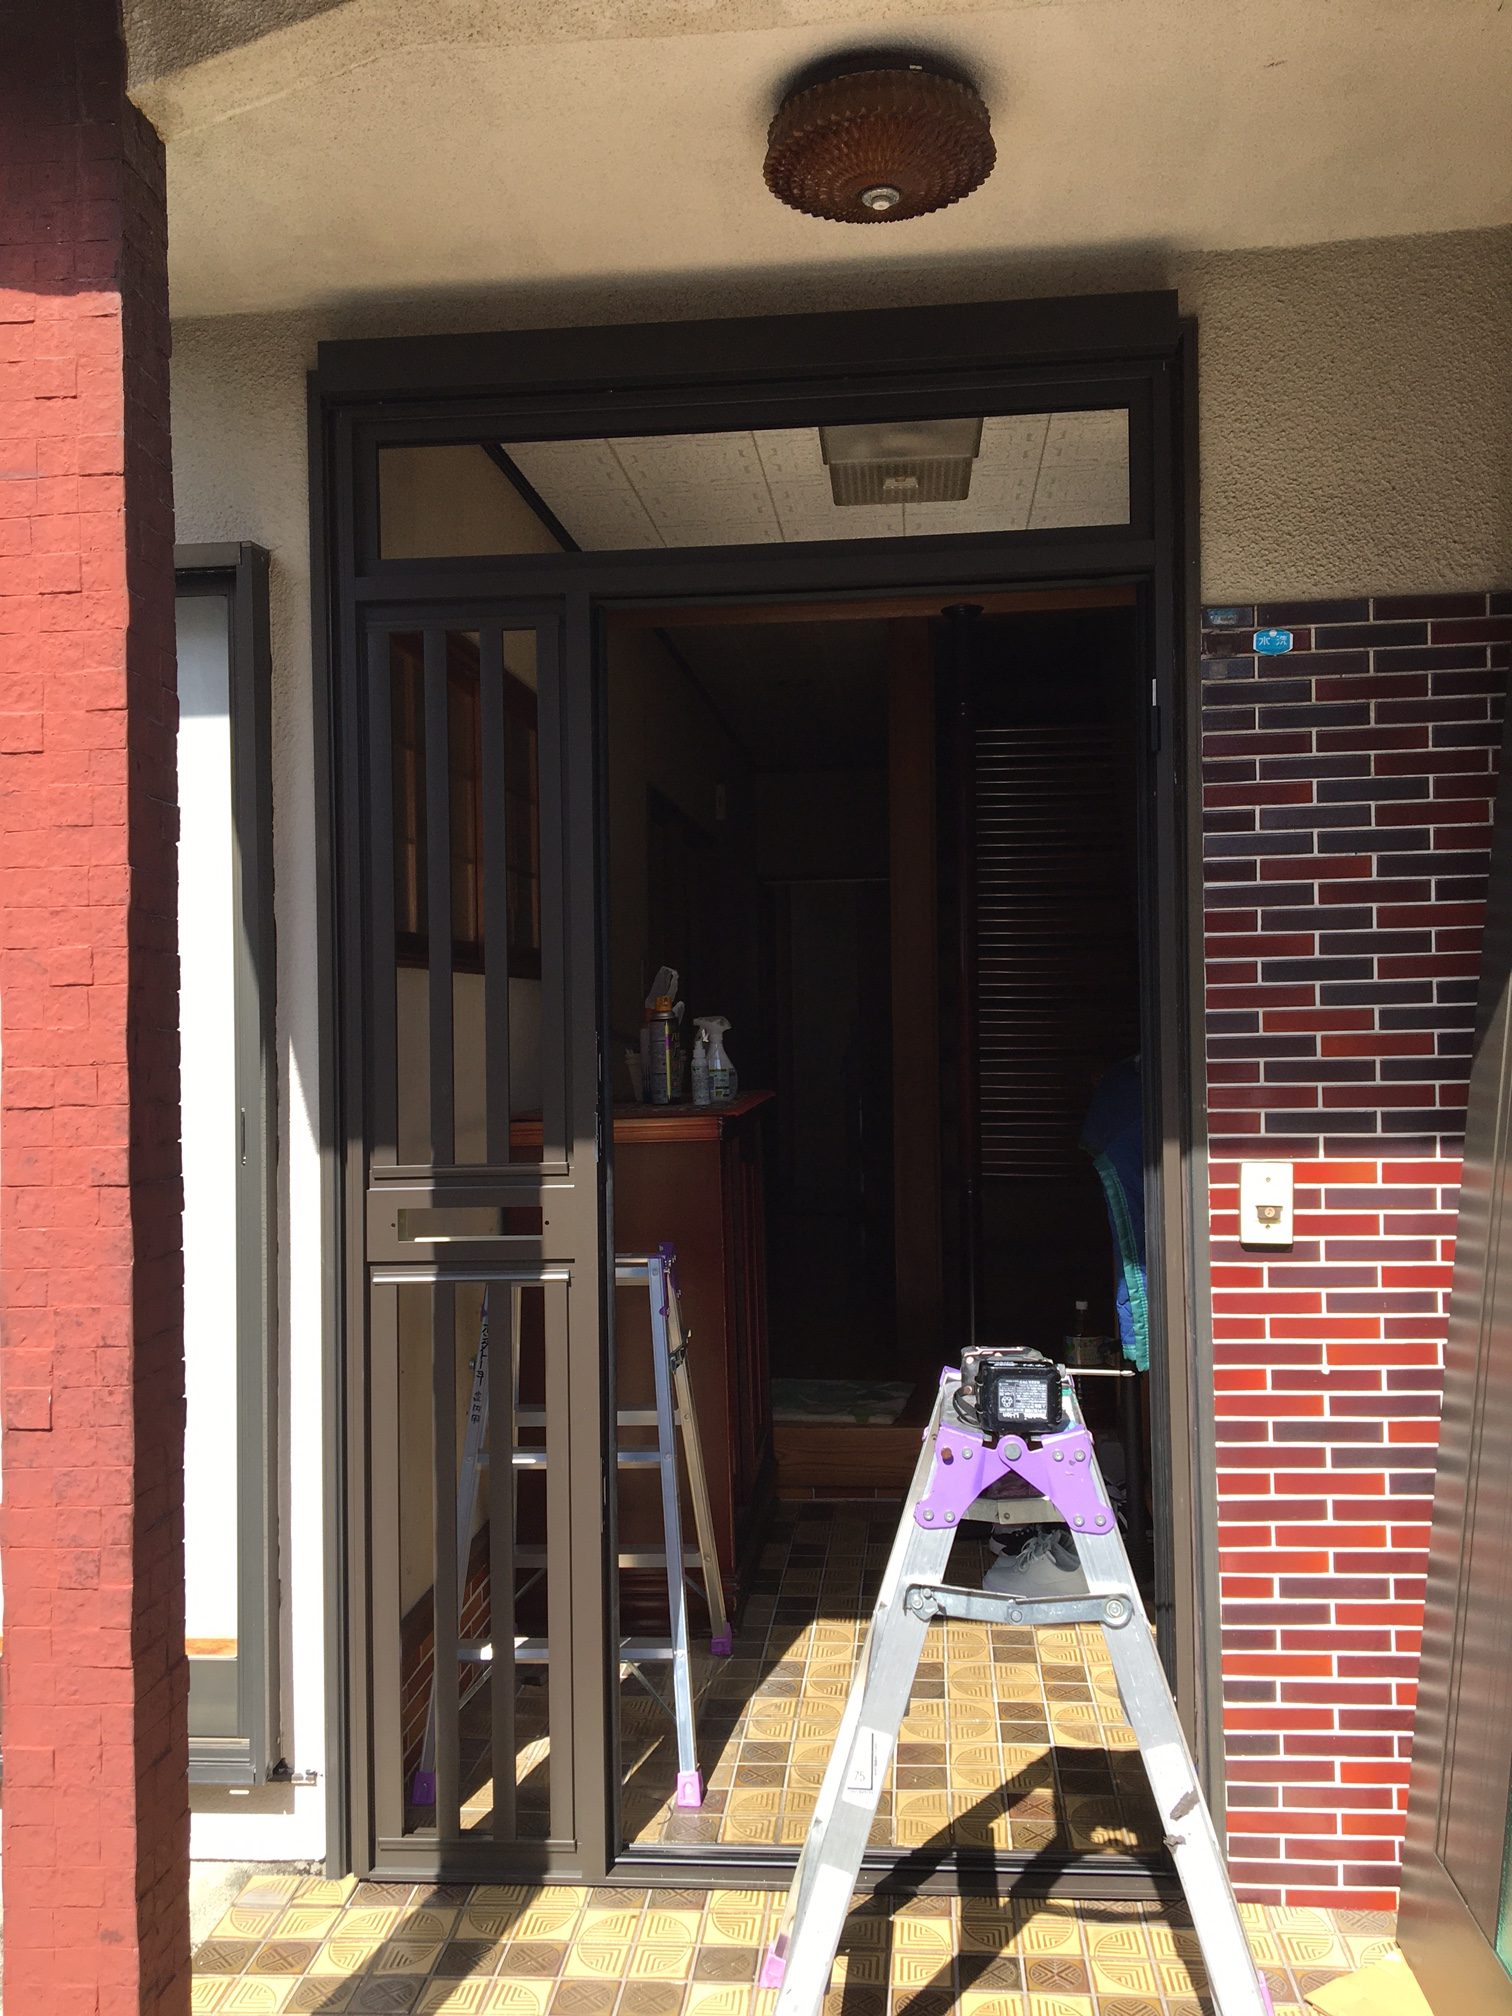 愛知県名古屋市緑区の戸建住宅にて、玄関ドア取替工事を行いました。（LIXILリシェント）【窓香房】